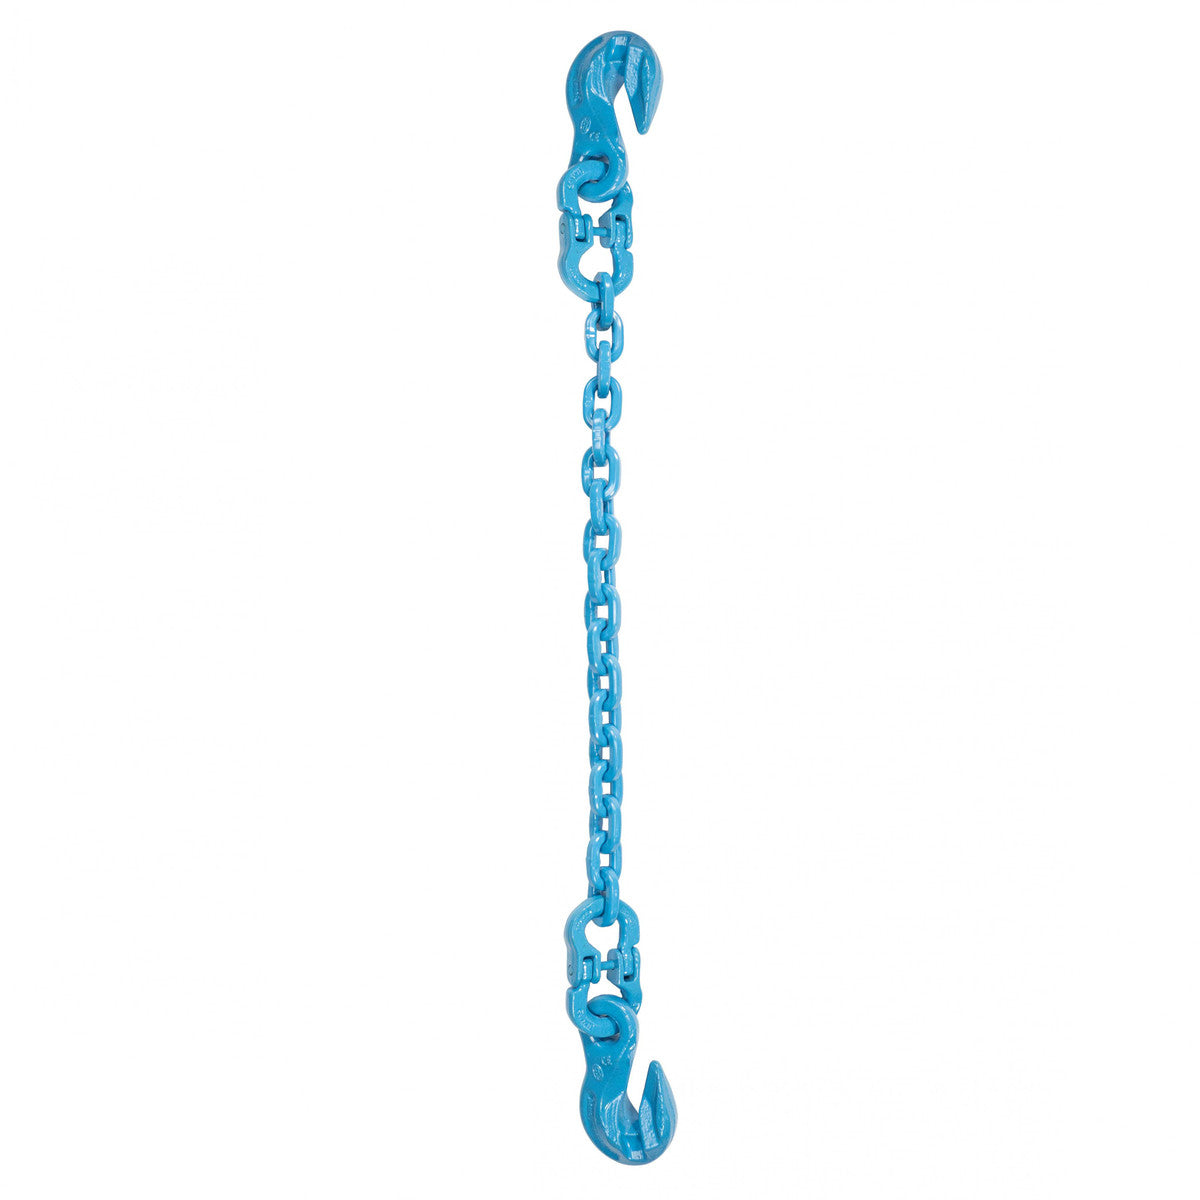 1/2" x 20' - Pewag Single Leg Chain Sling w/ Grab & Grab Hooks - Grade 120